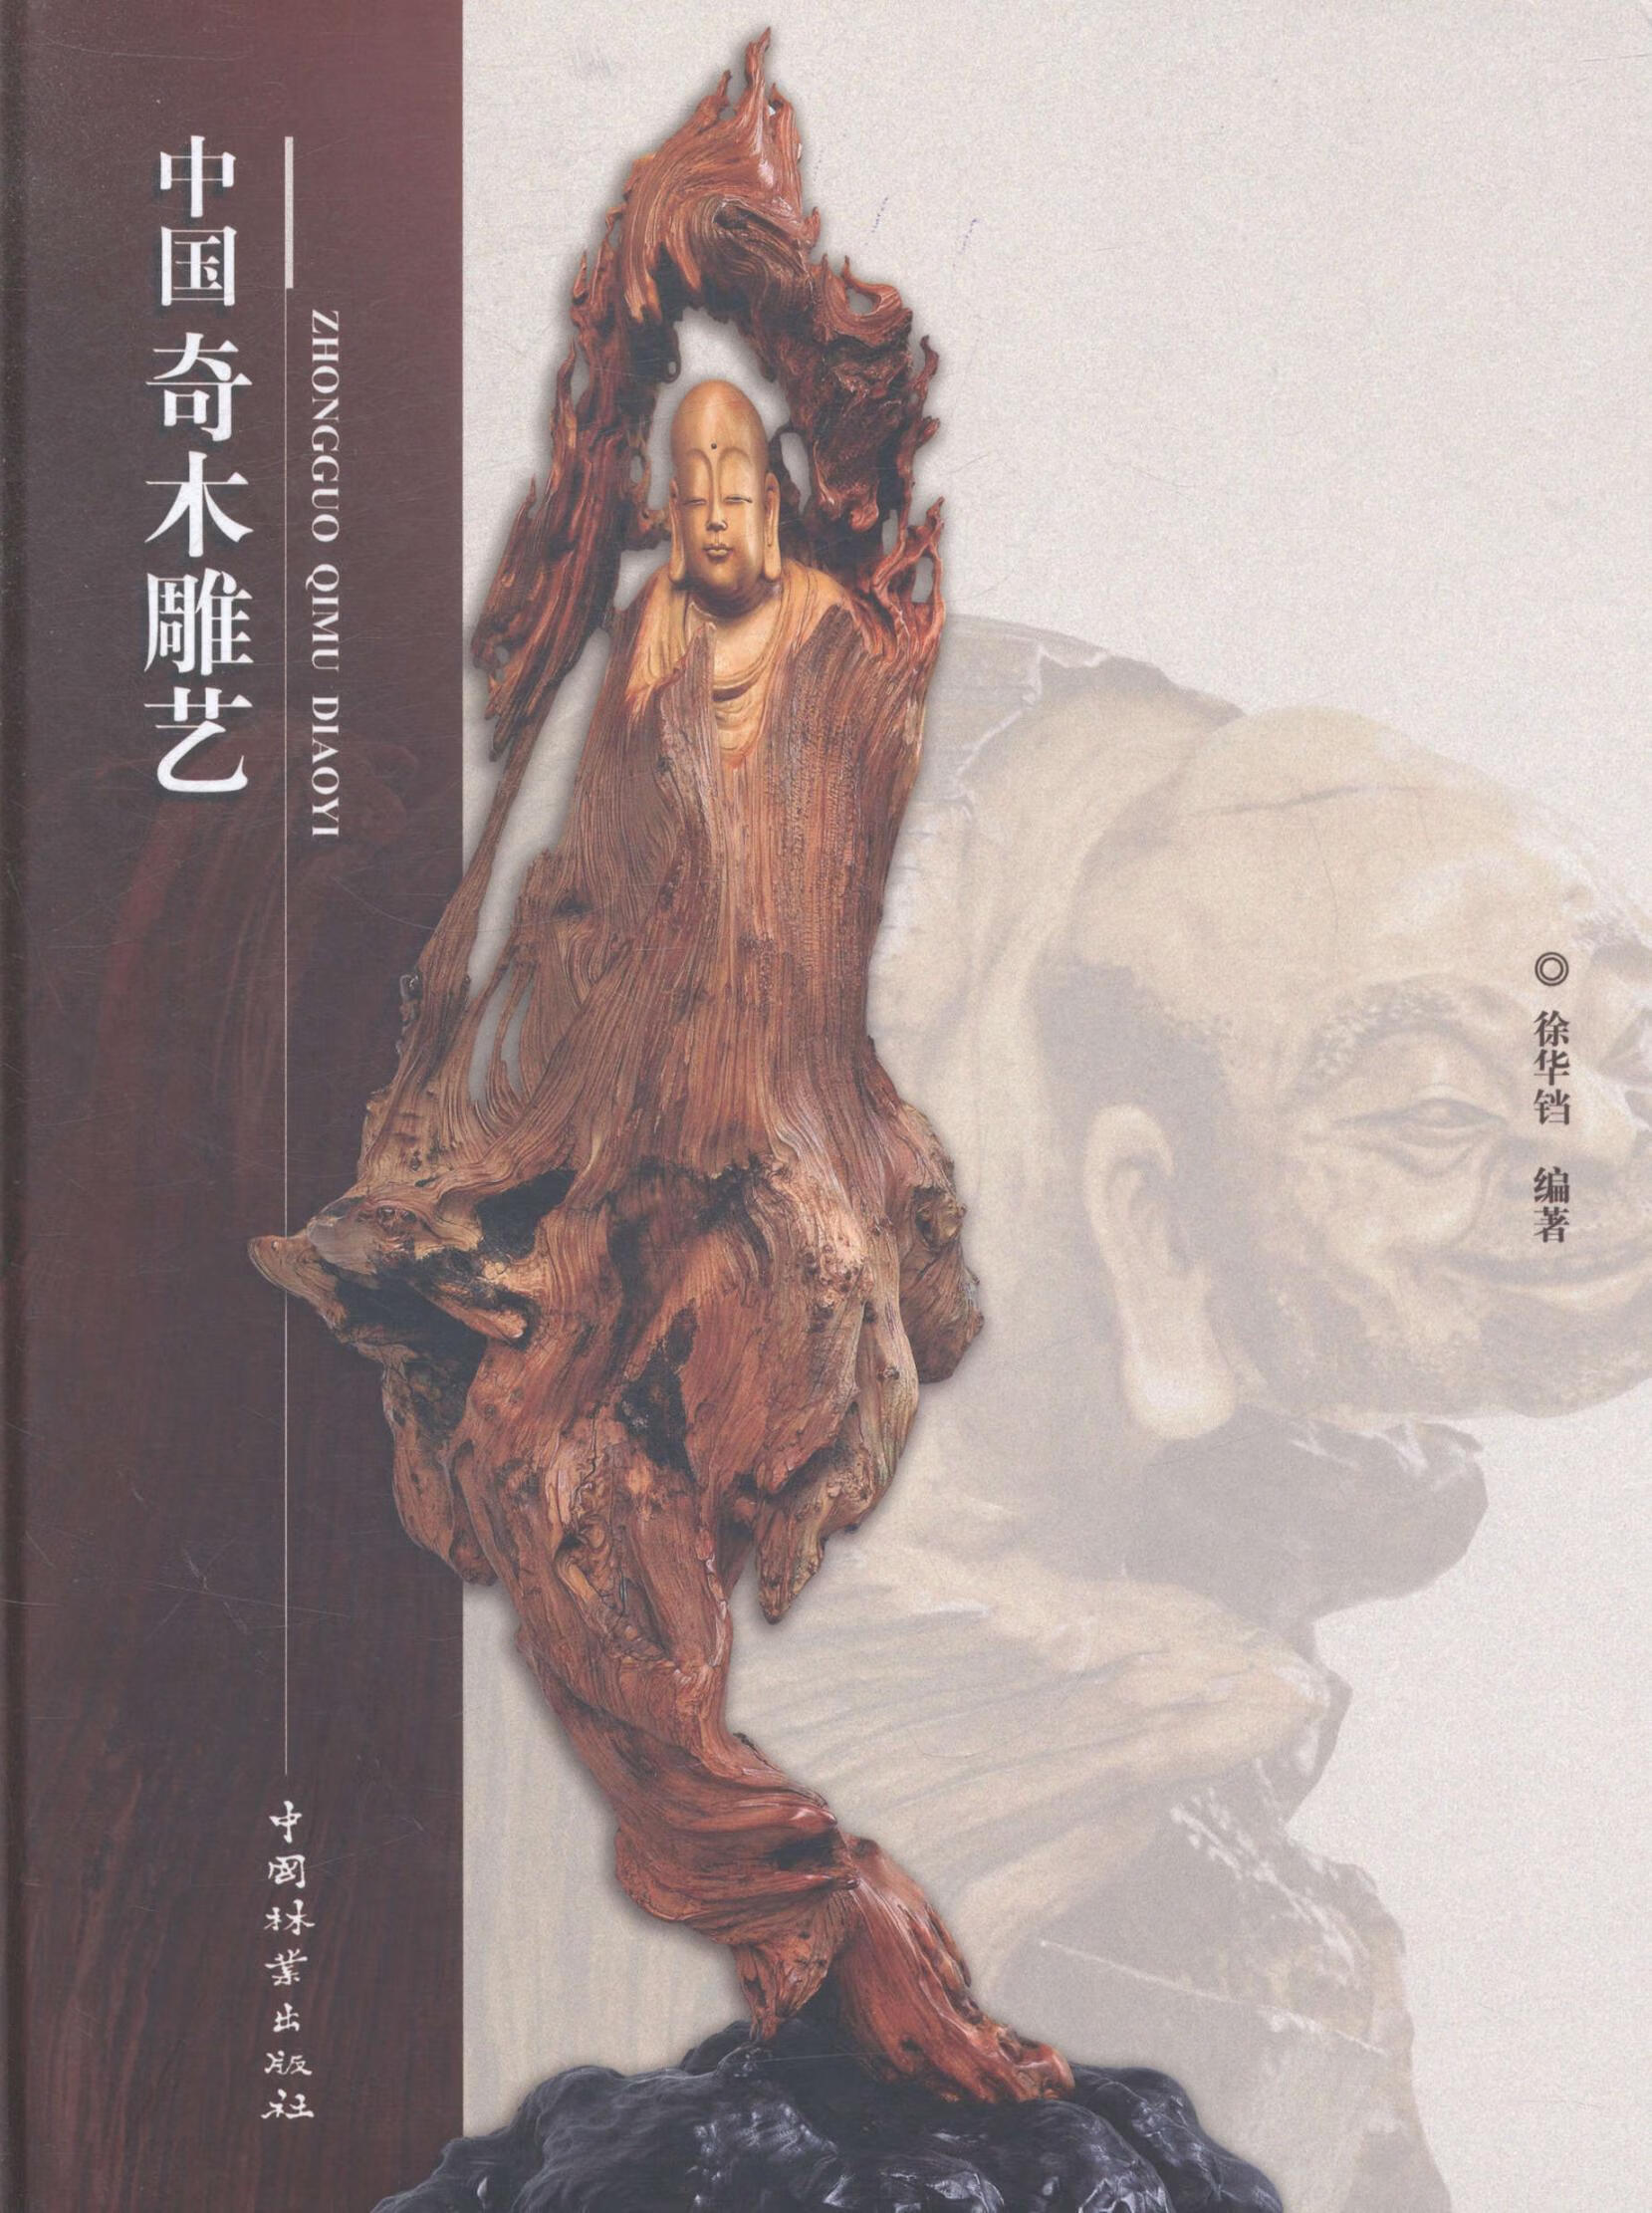 中国奇木雕艺艺术木雕作品集中国现代 图书